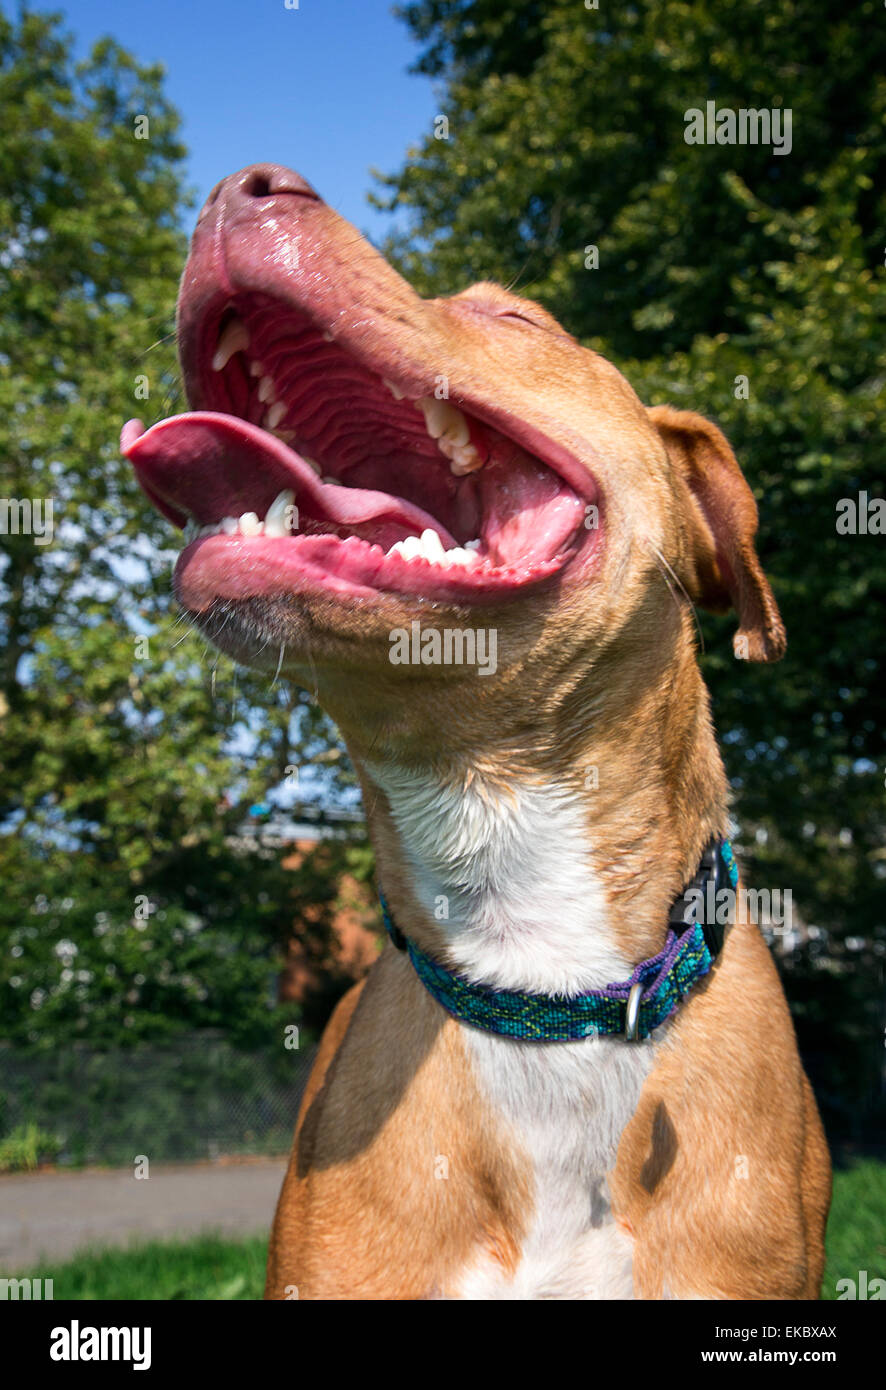 Hund hecheln mit Mund weit öffnen und Zunge raus Stockfoto